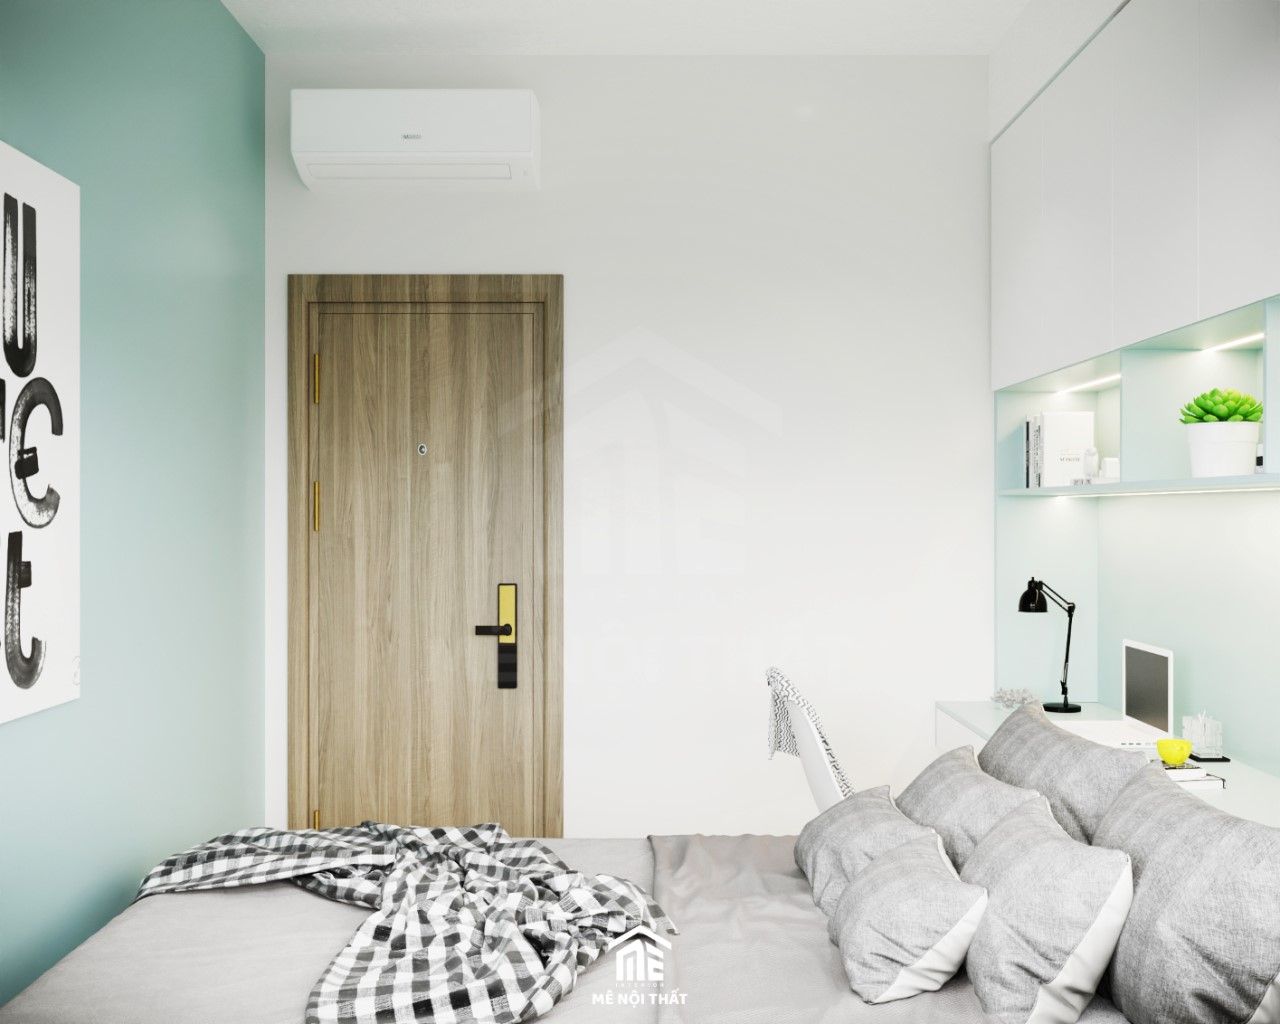 Thiết kế phòng ngủ nhỏ tông xanh mint - trắng nhẹ nhàng, đơn giản